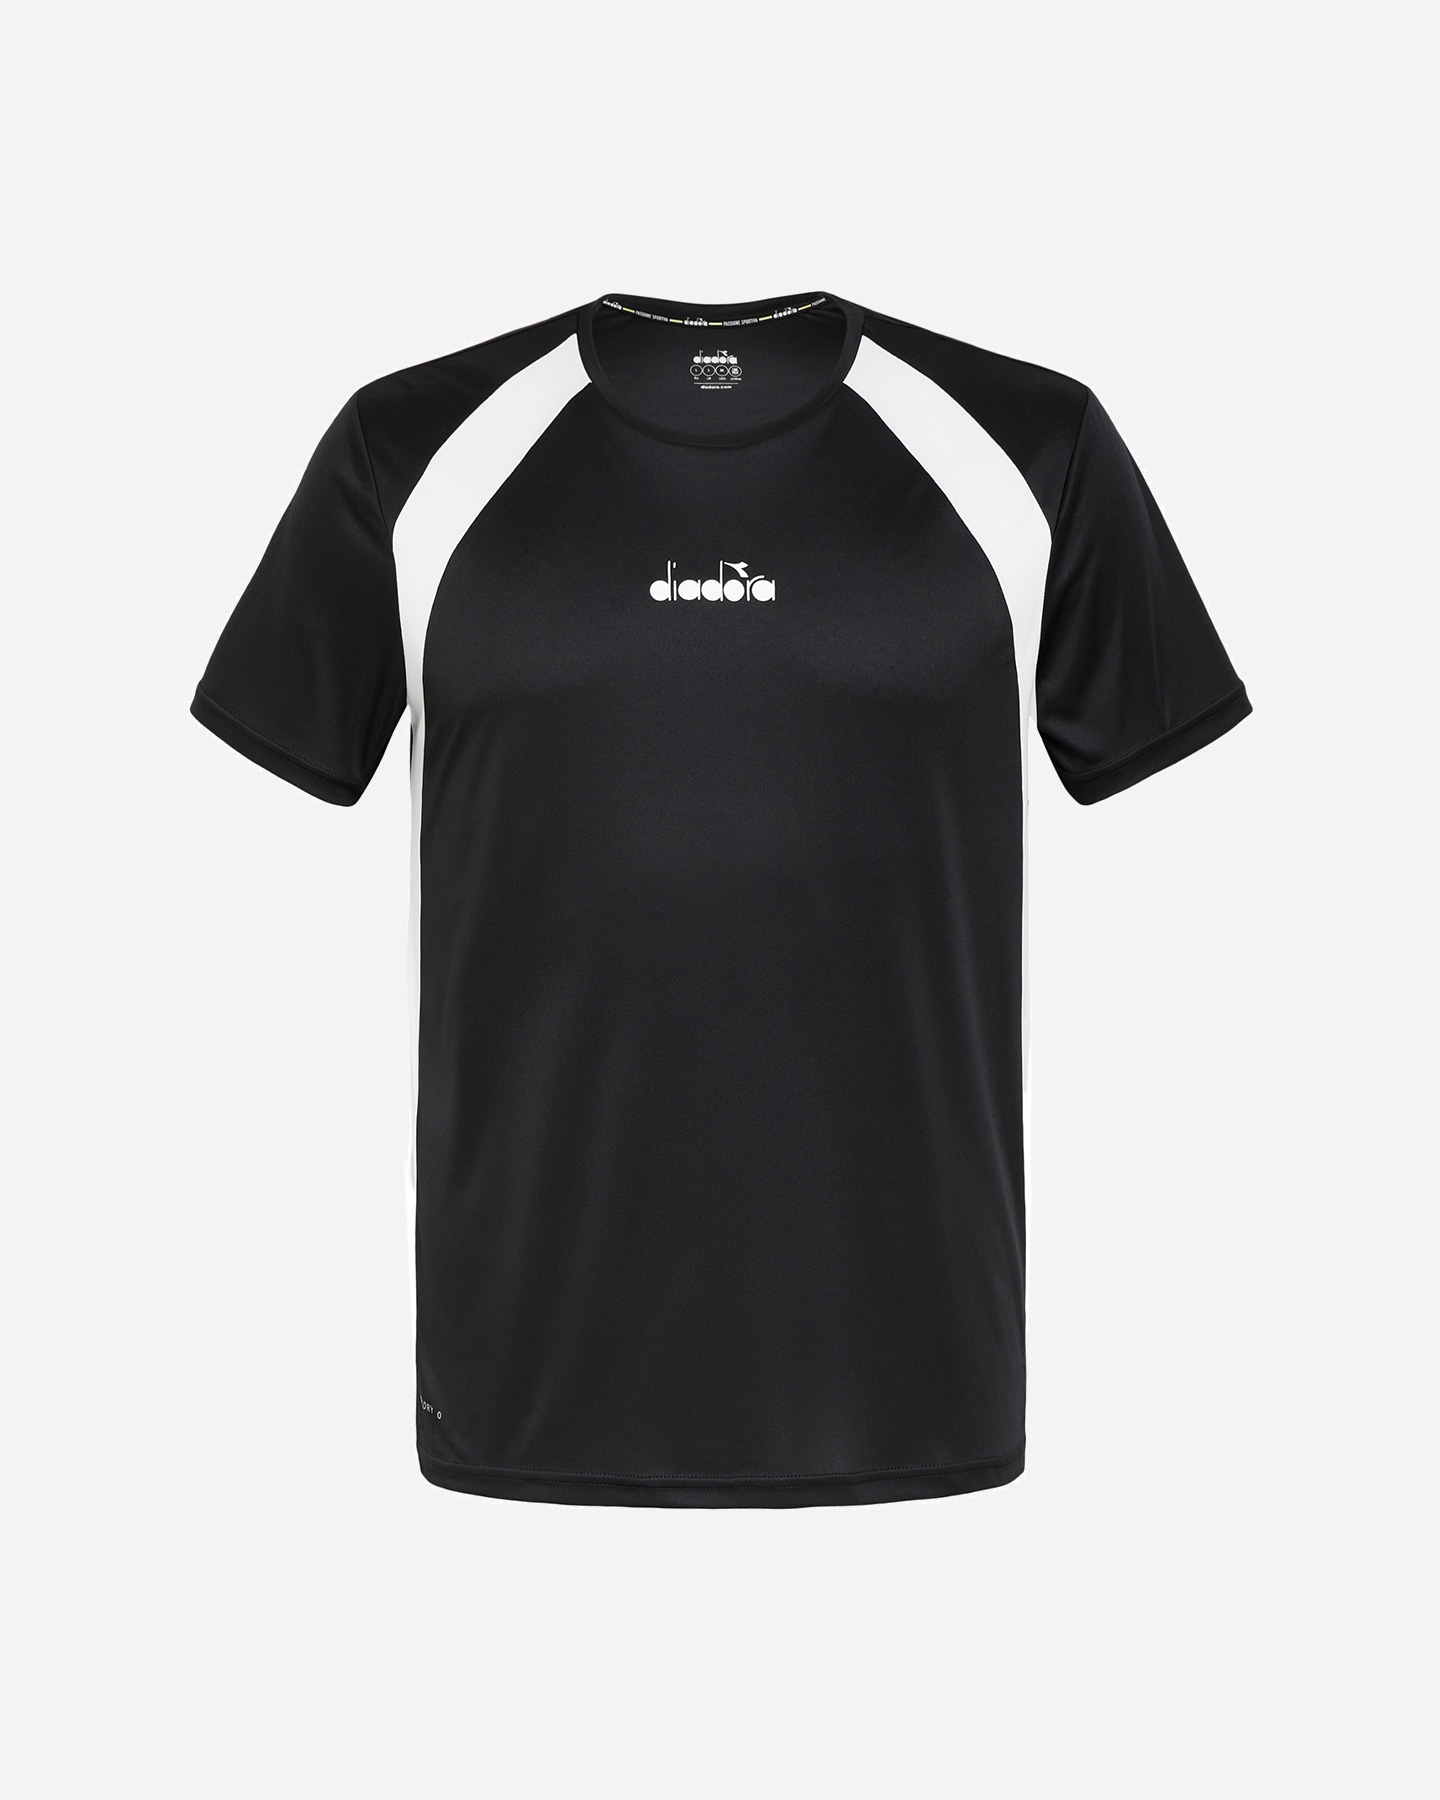 diadora classic m - t-shirt tennis - uomo